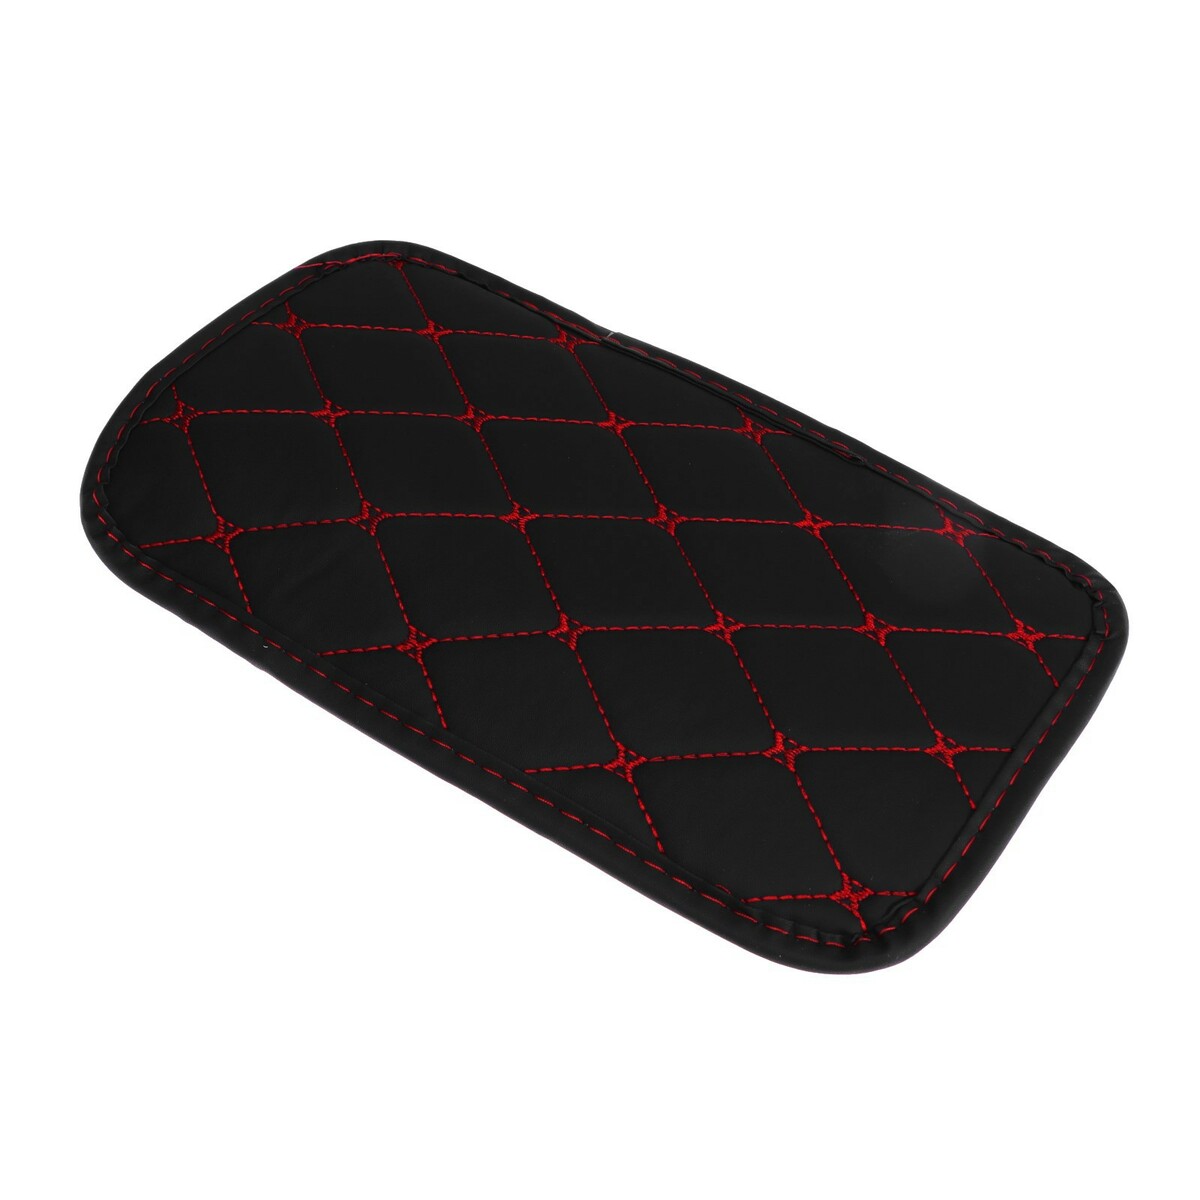 Коврик на подлокотник 29×19, экокожа, черный с красной строчкой массажный коврик подлокотника ящерица с красной окантовкой 26×15 см